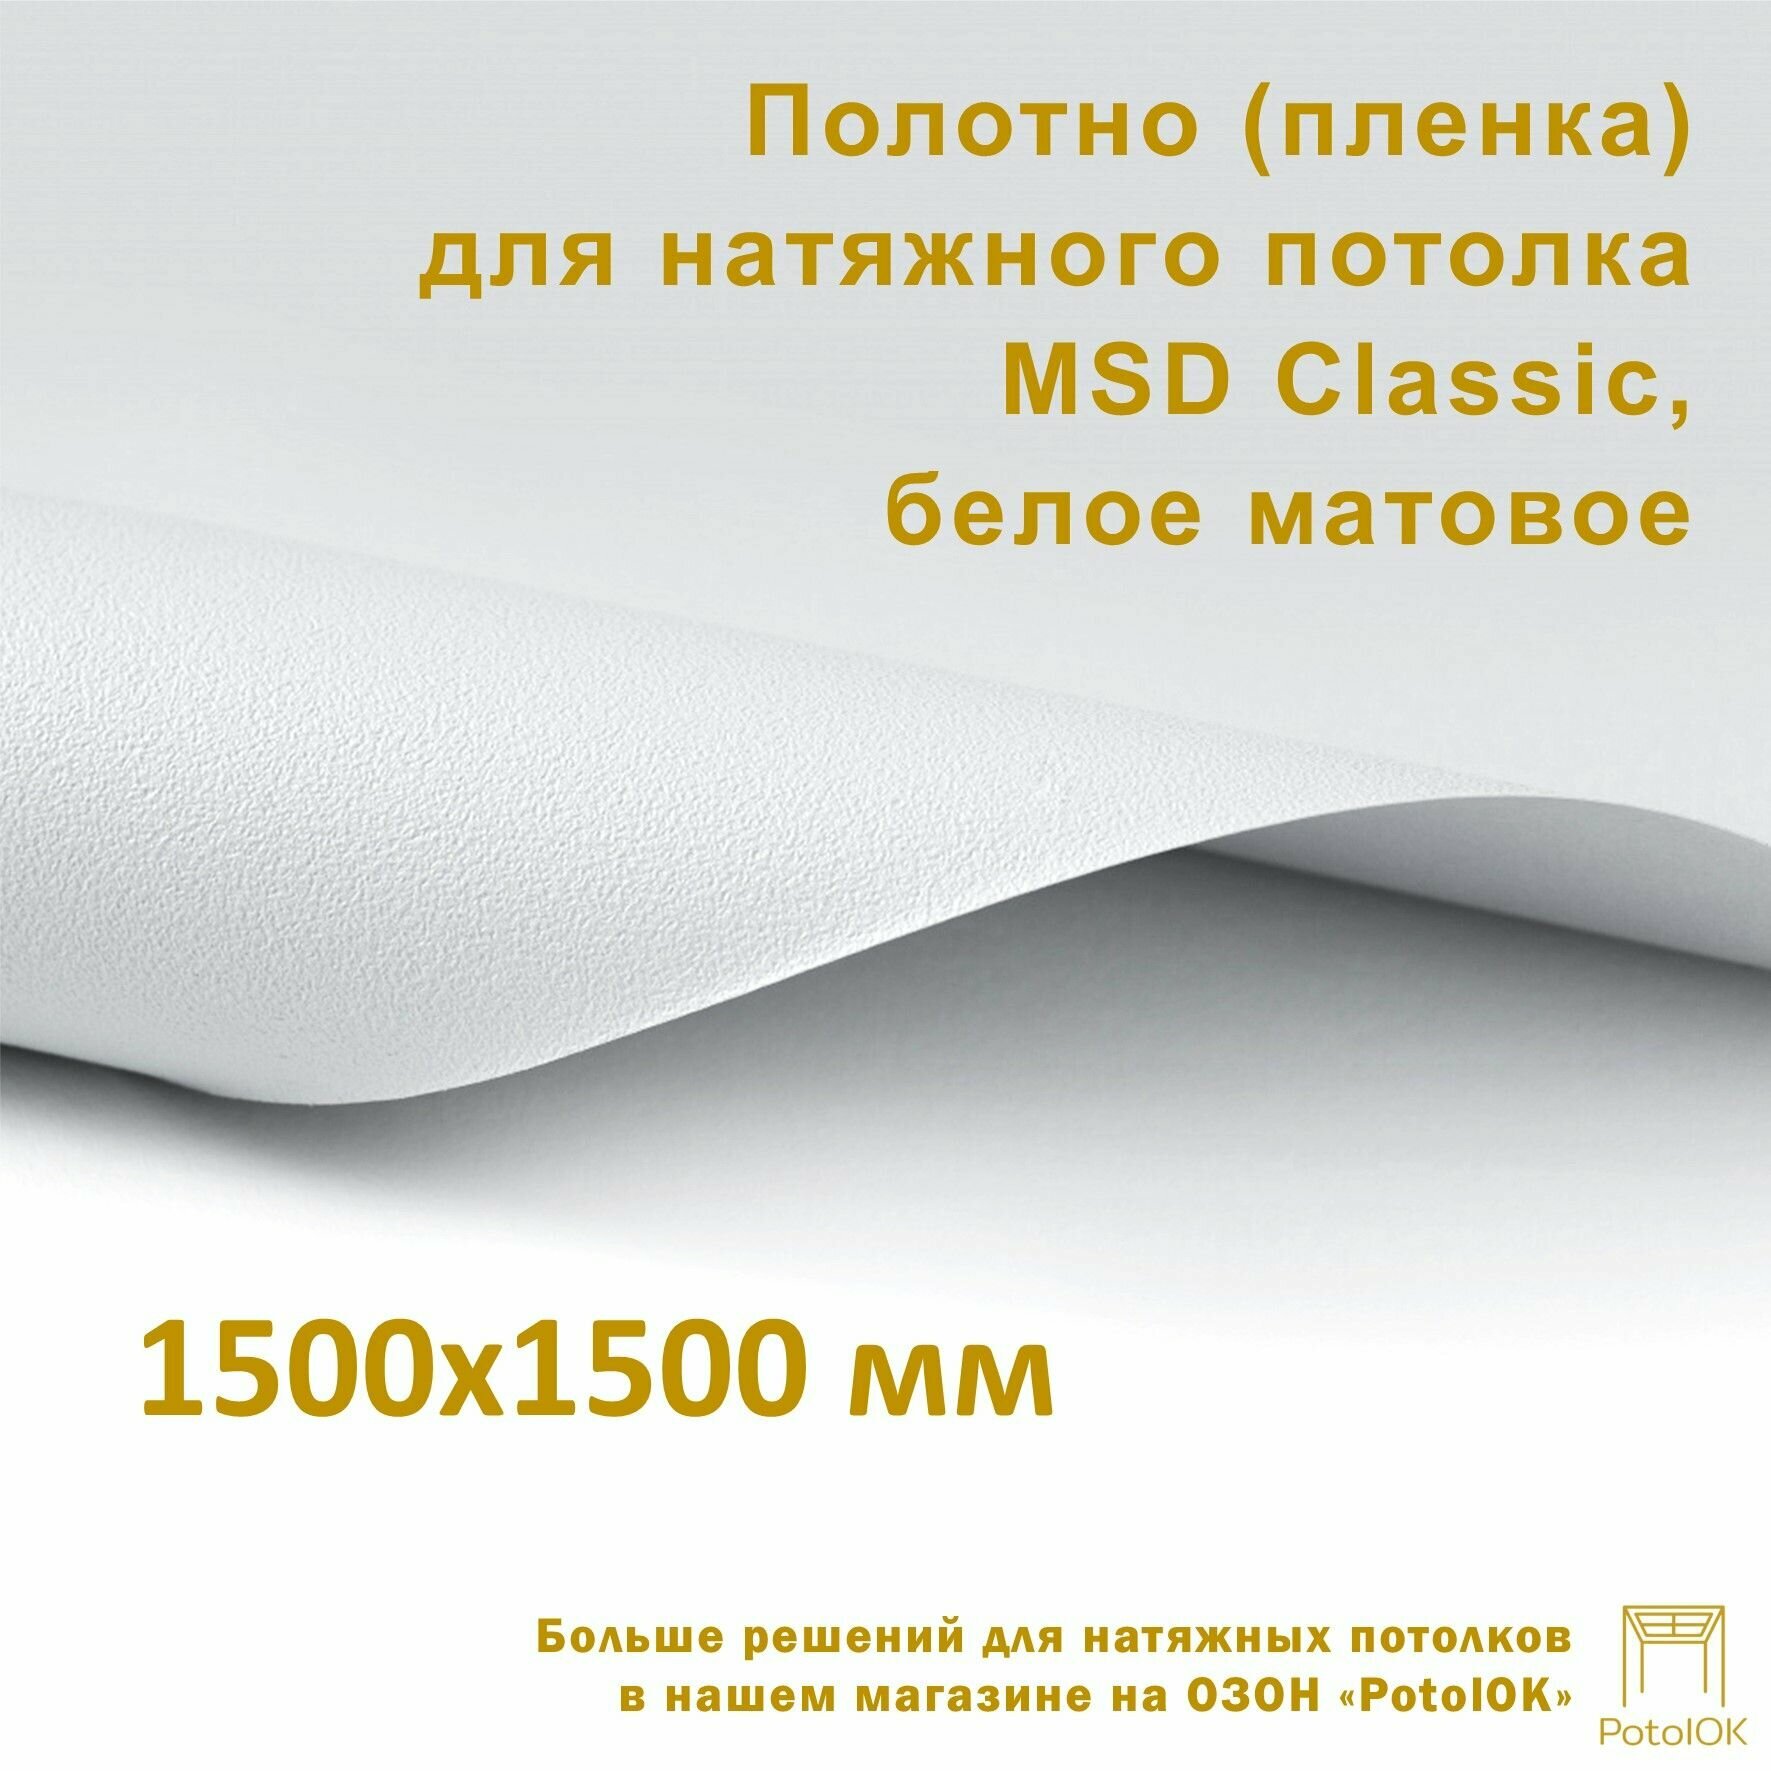 Полотно (пленка) для натяжного потолка MSD CLASSIC, белое матовое, 1500x1500 мм